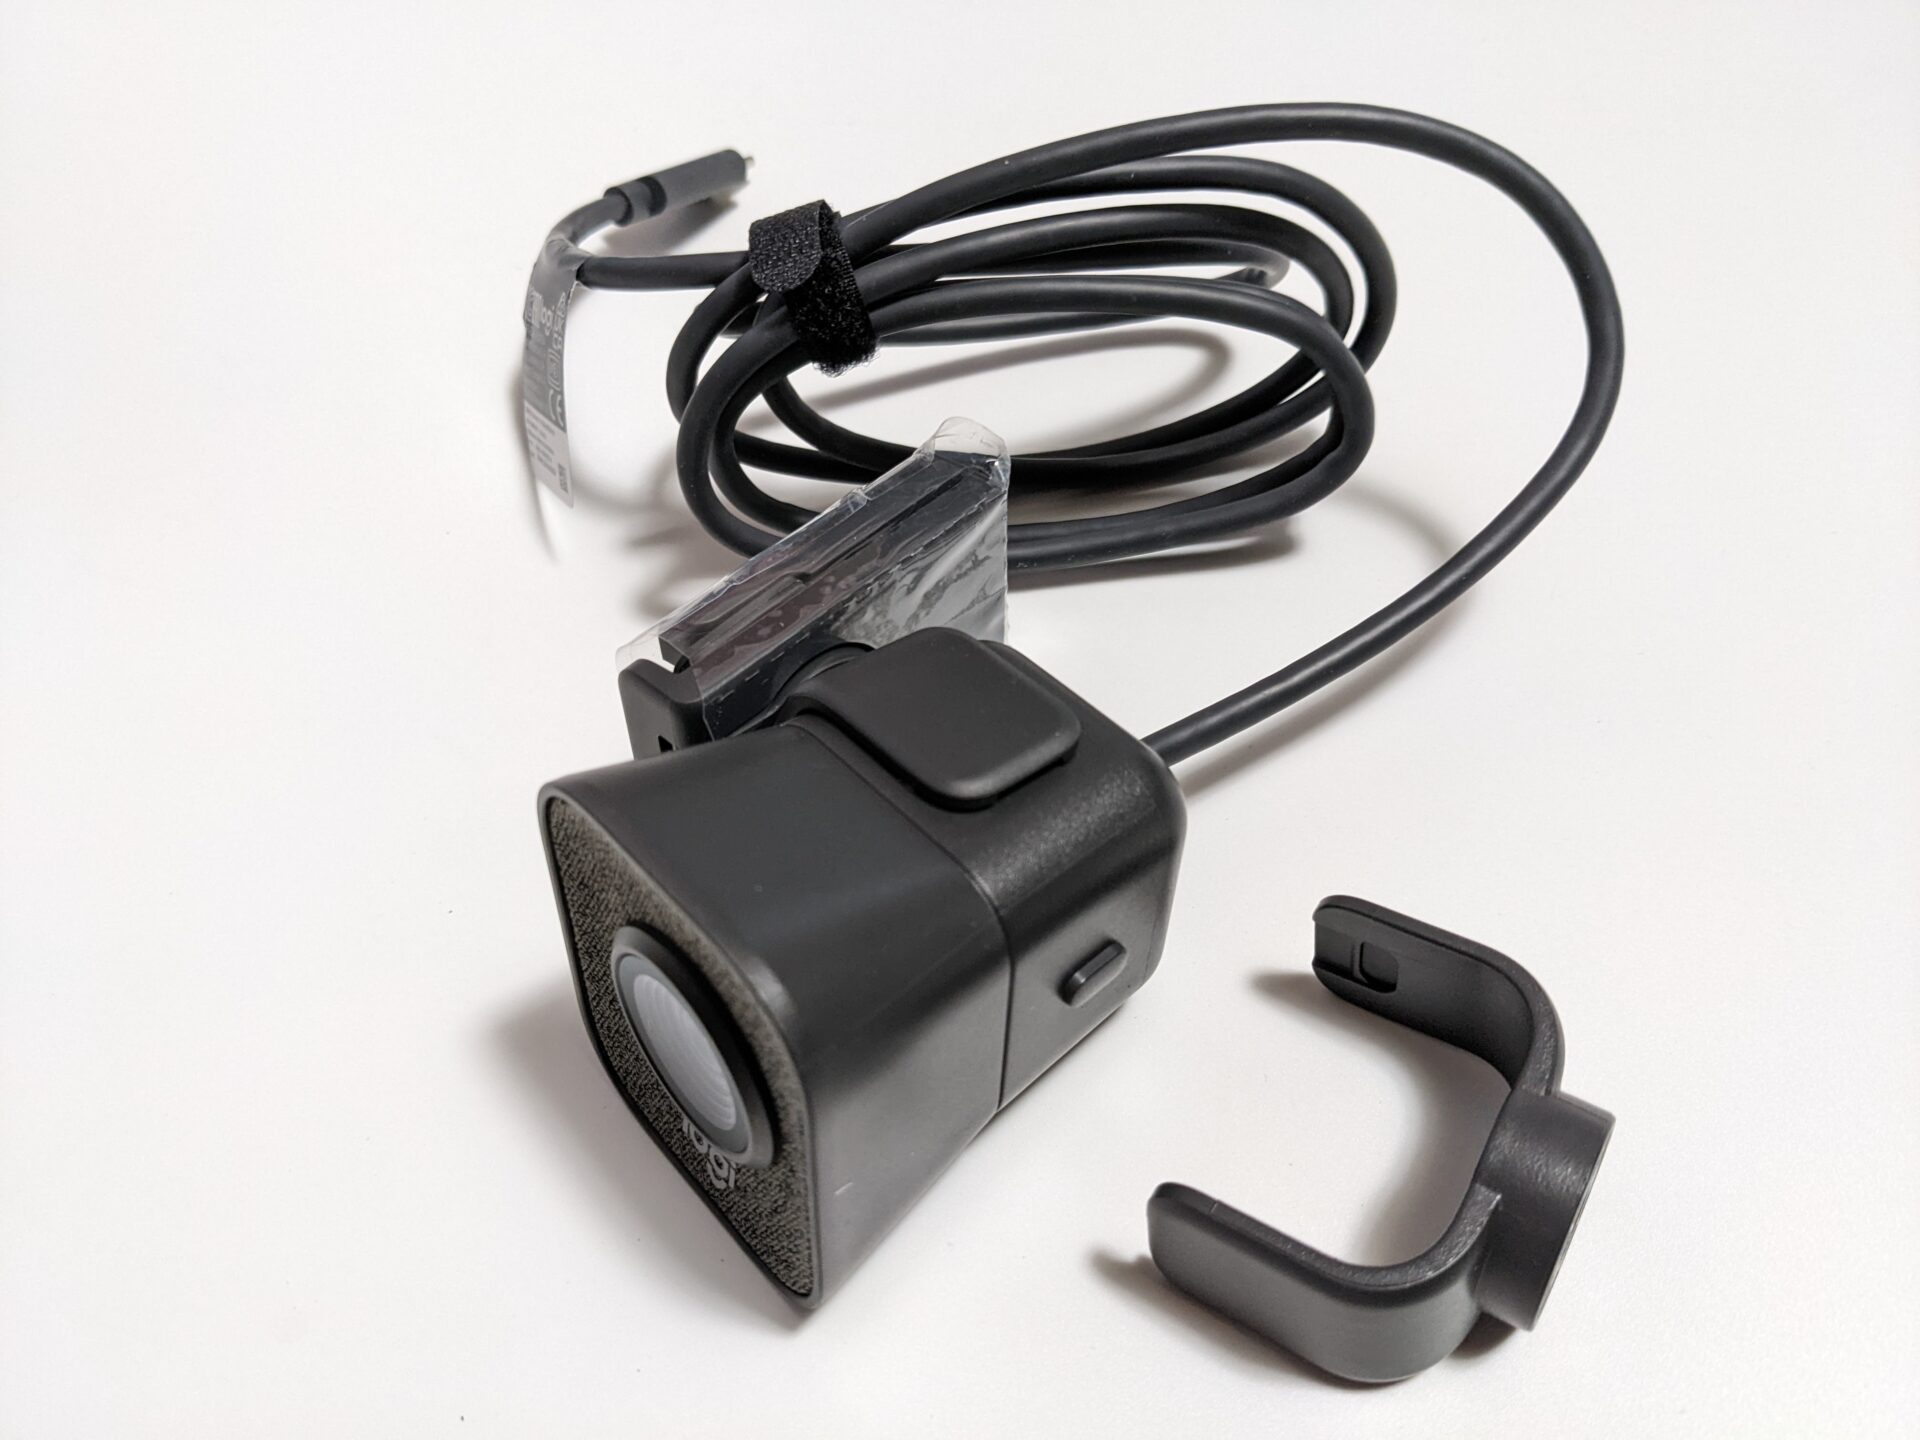 ロジクールウェブカメラ『StreamCam C980GR』購入レビュー - ネット 